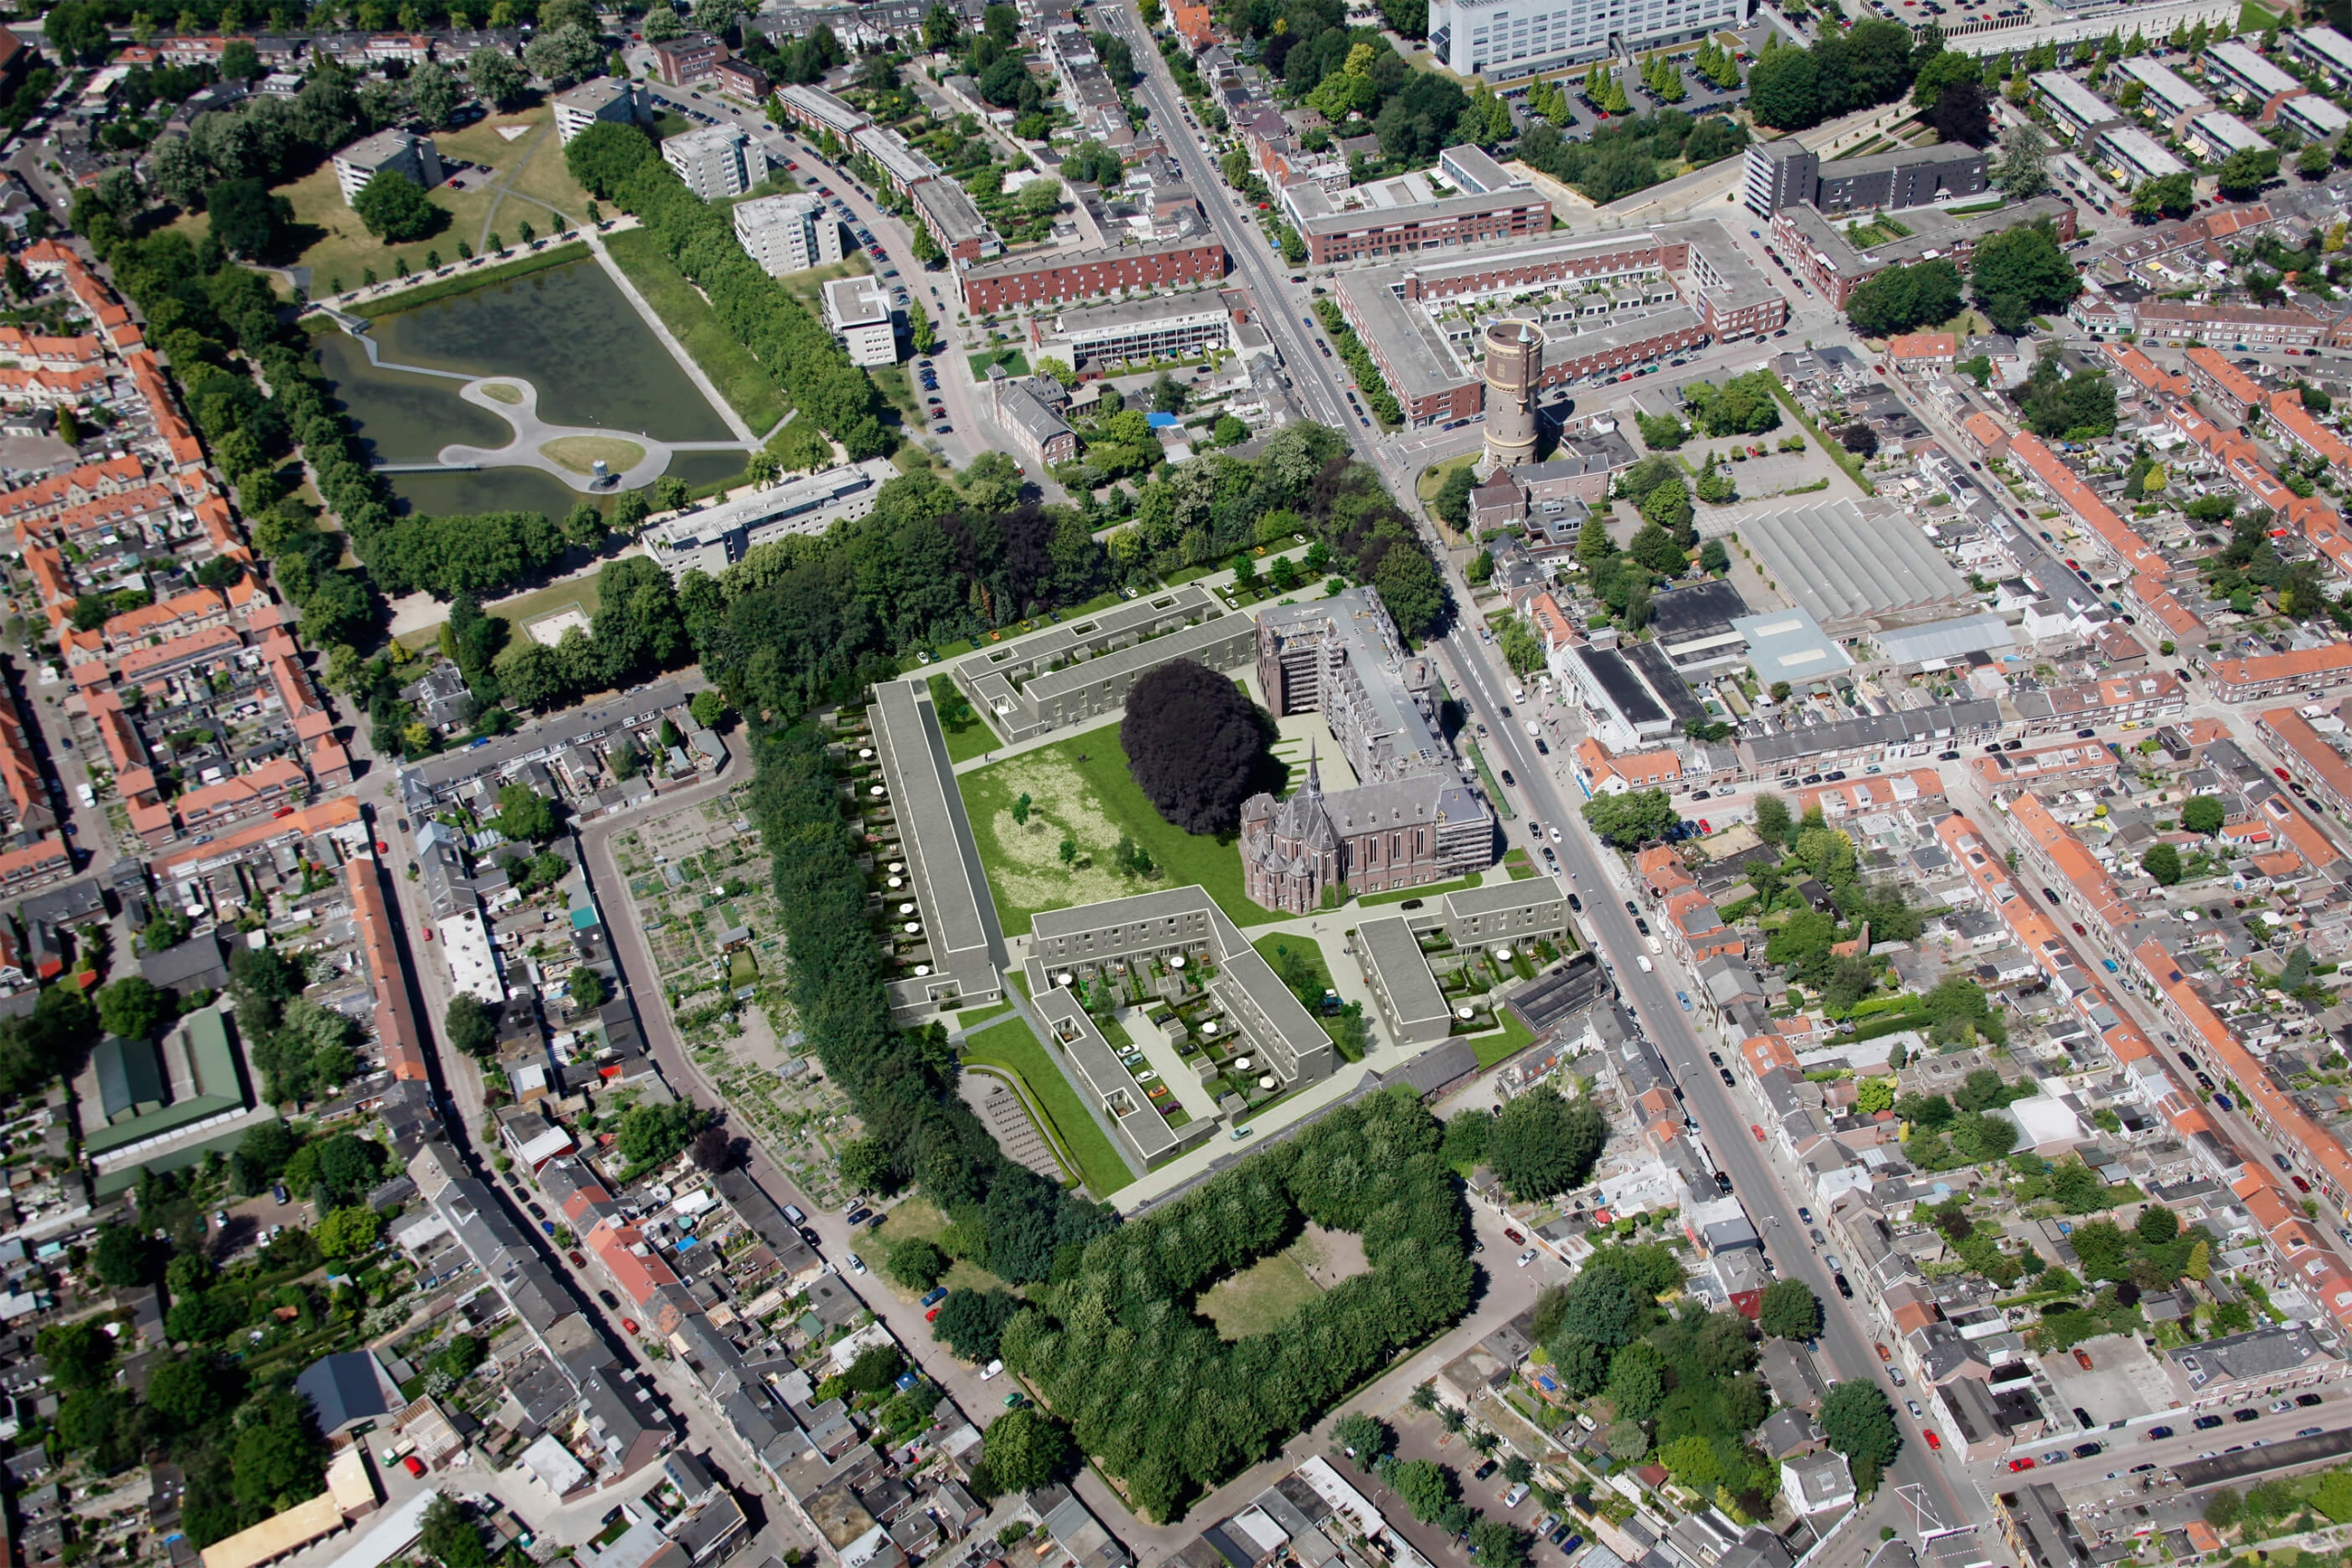 Vogelvlucht impressie met de herontwikkeling van het missiehuis Rooi Harten en de kloostertuin in Tilburg.